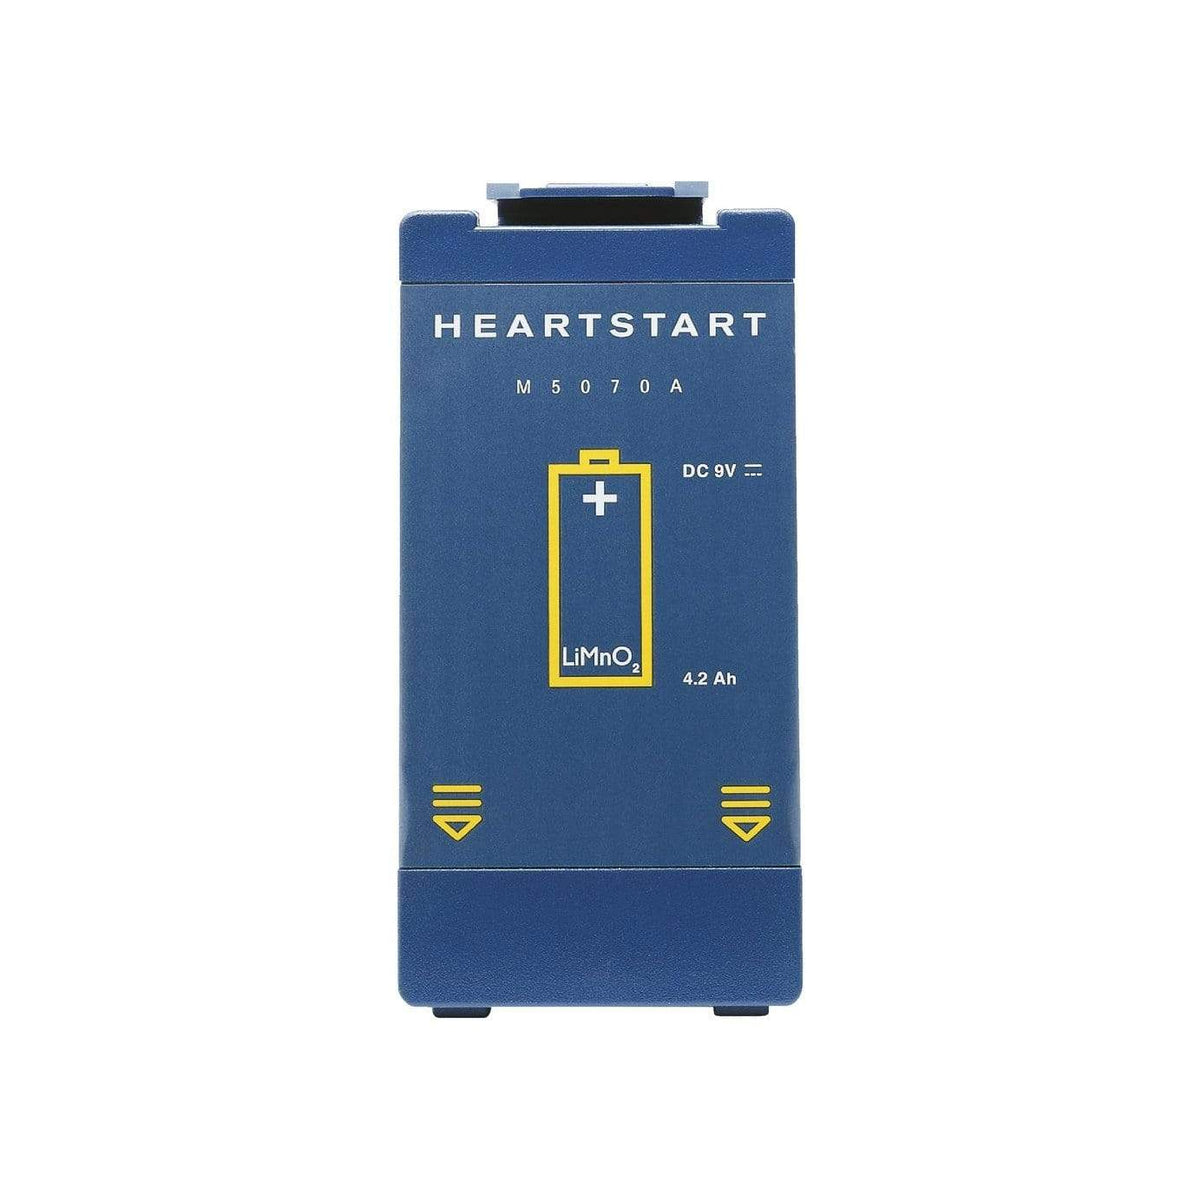 Heartstart FRx / HS1 Battery (M5070A)